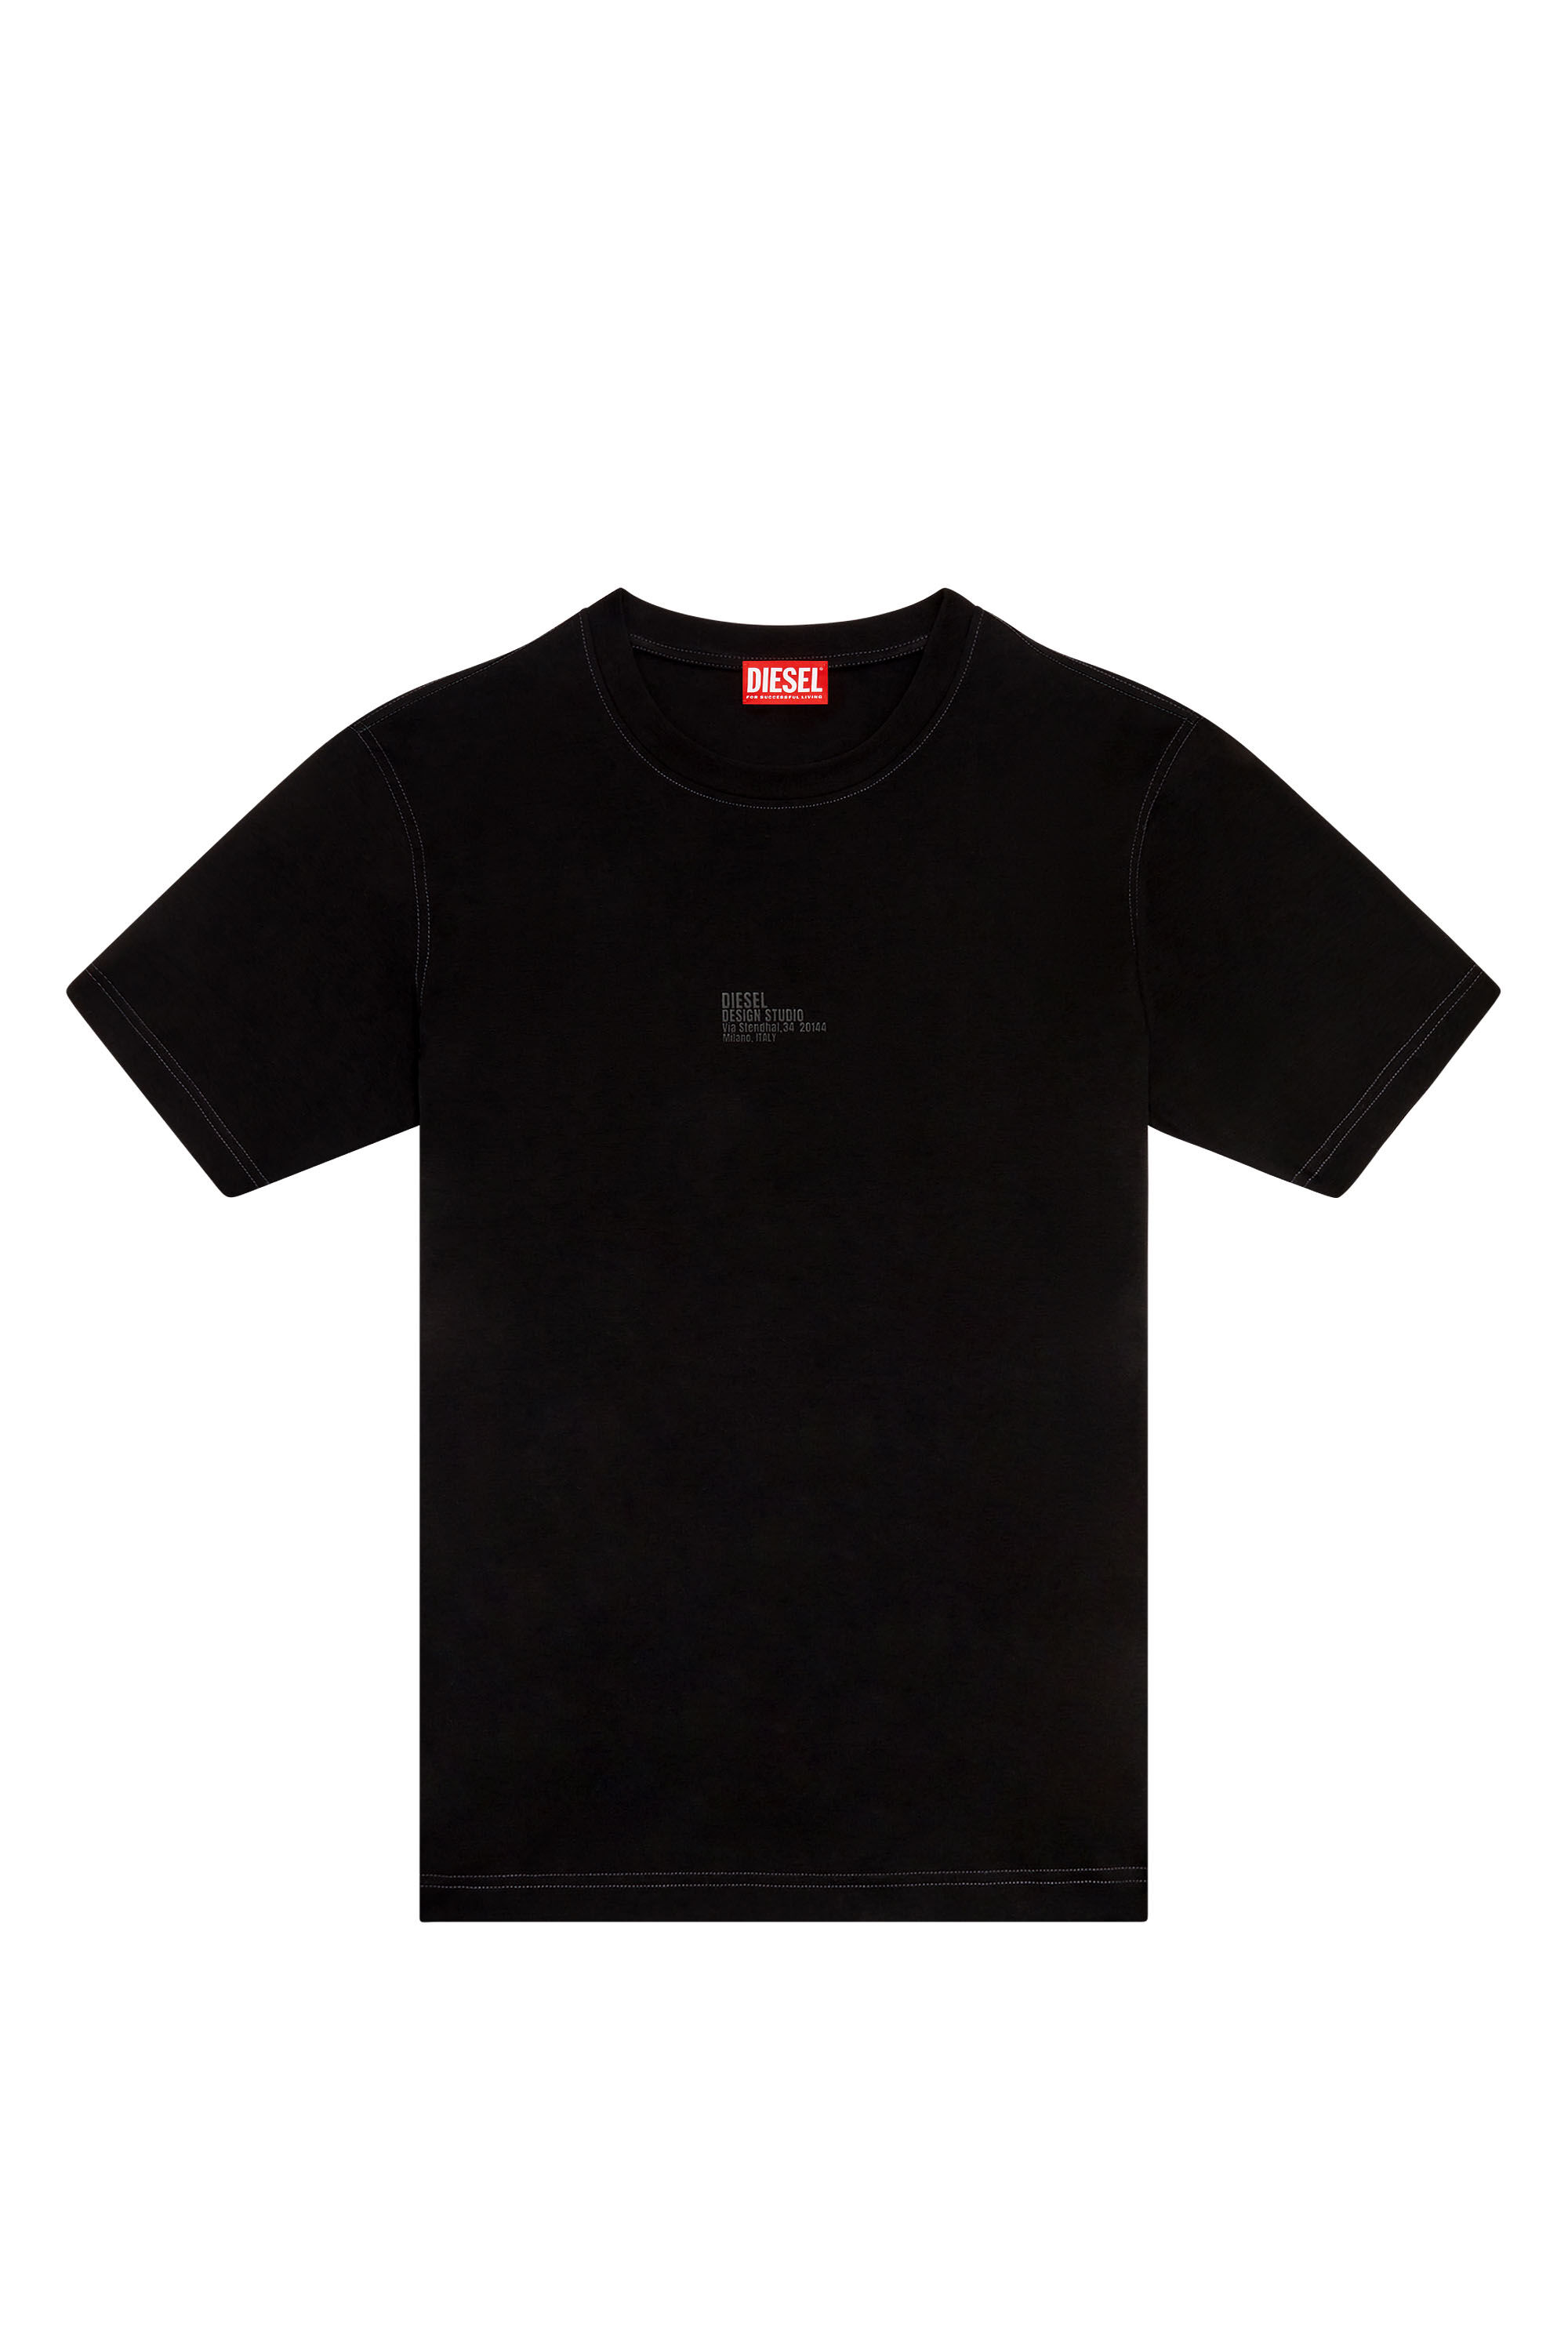 Diesel - T-MUST-SLITS-N2, Man T-shirt with Diesel Studio print in Black - Image 2